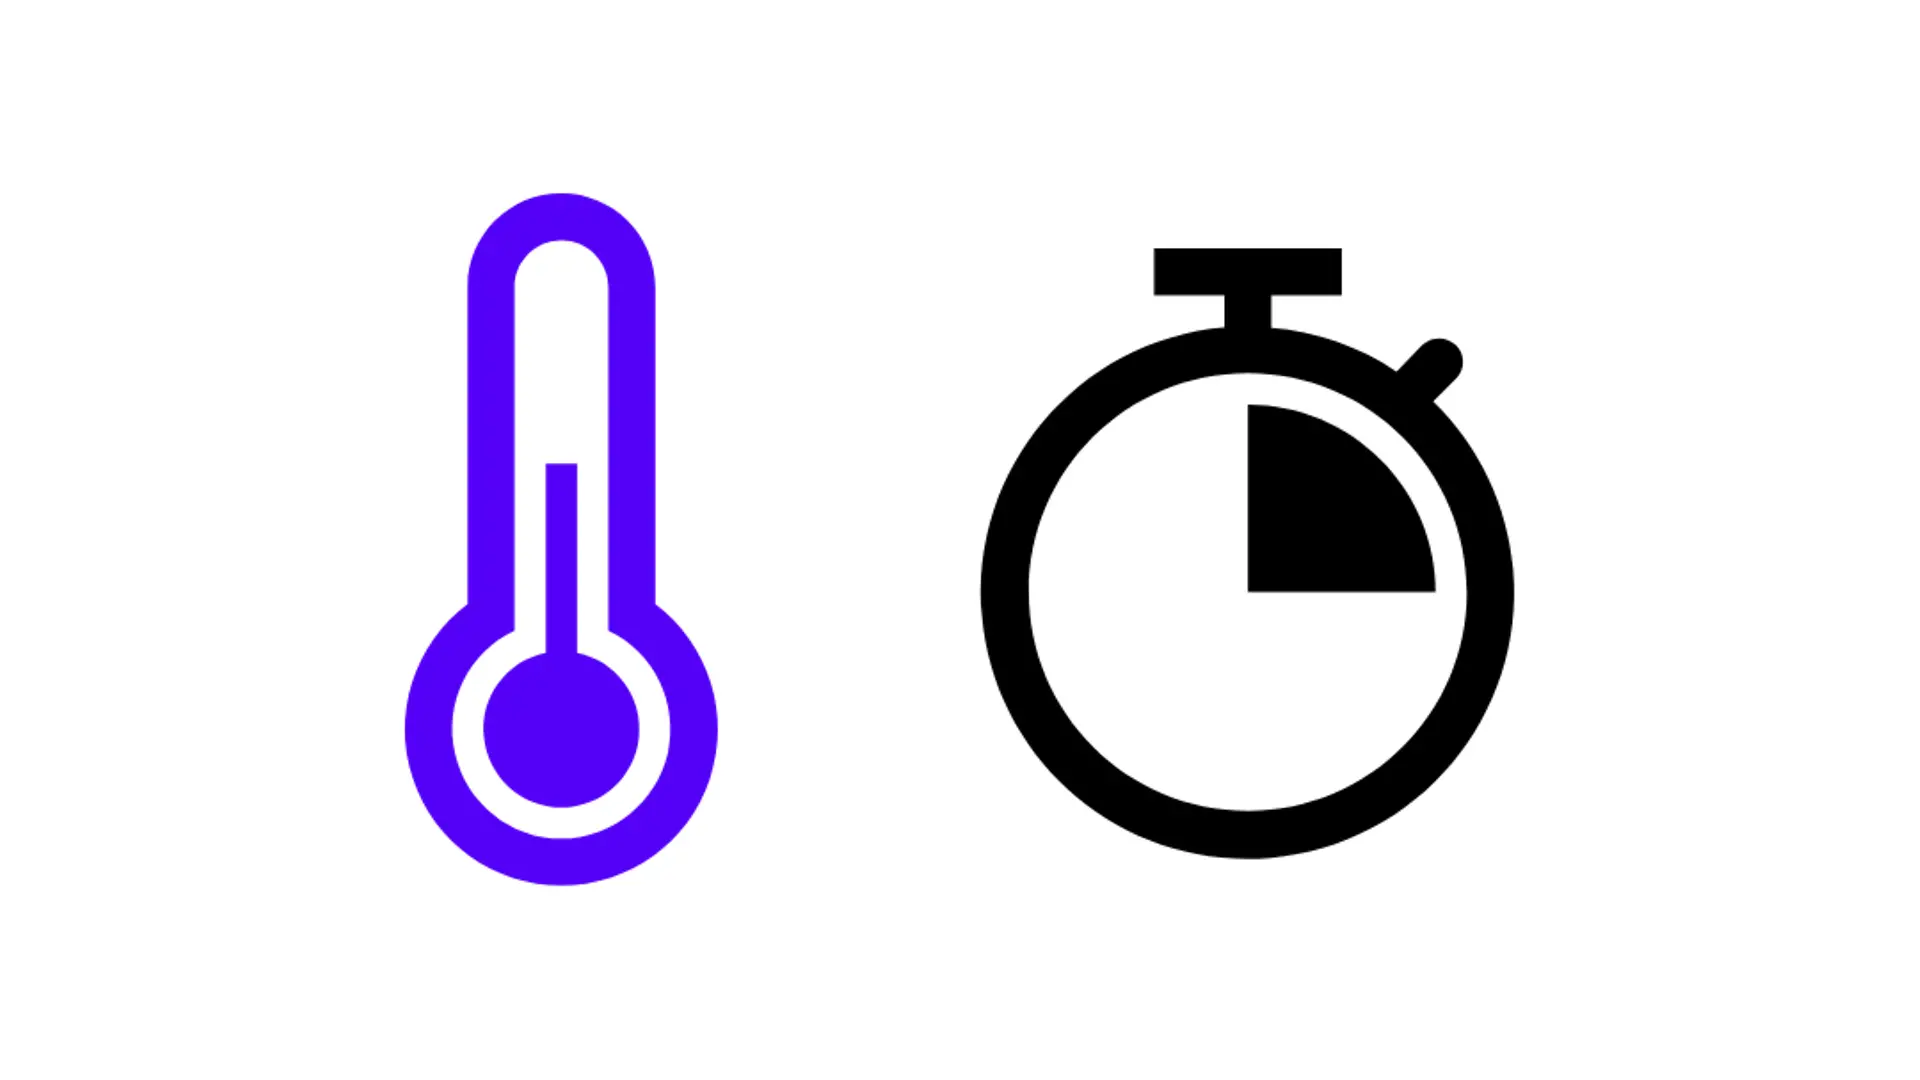 símbolo azul para termómetro y símbolo de reloj, cuarto de hora